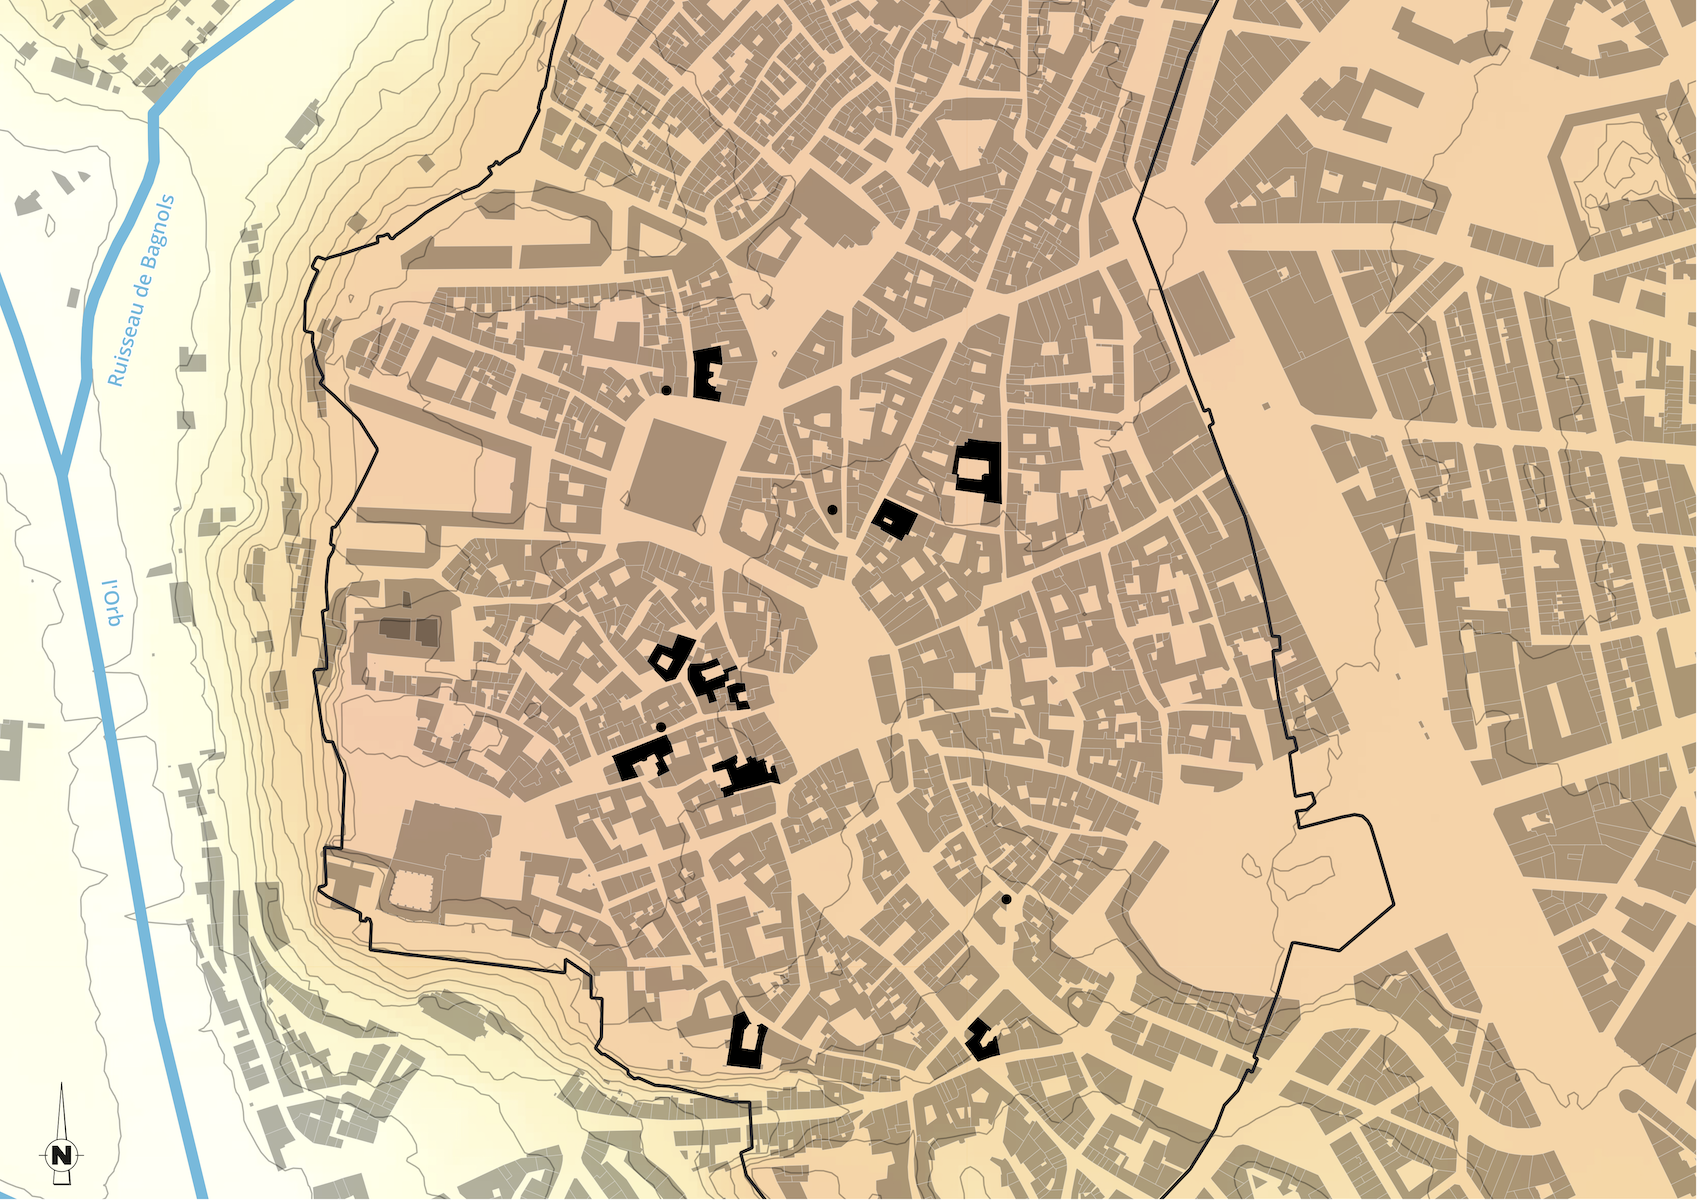 Plan de Béziers actuel avec hôtels médiévaux en noir